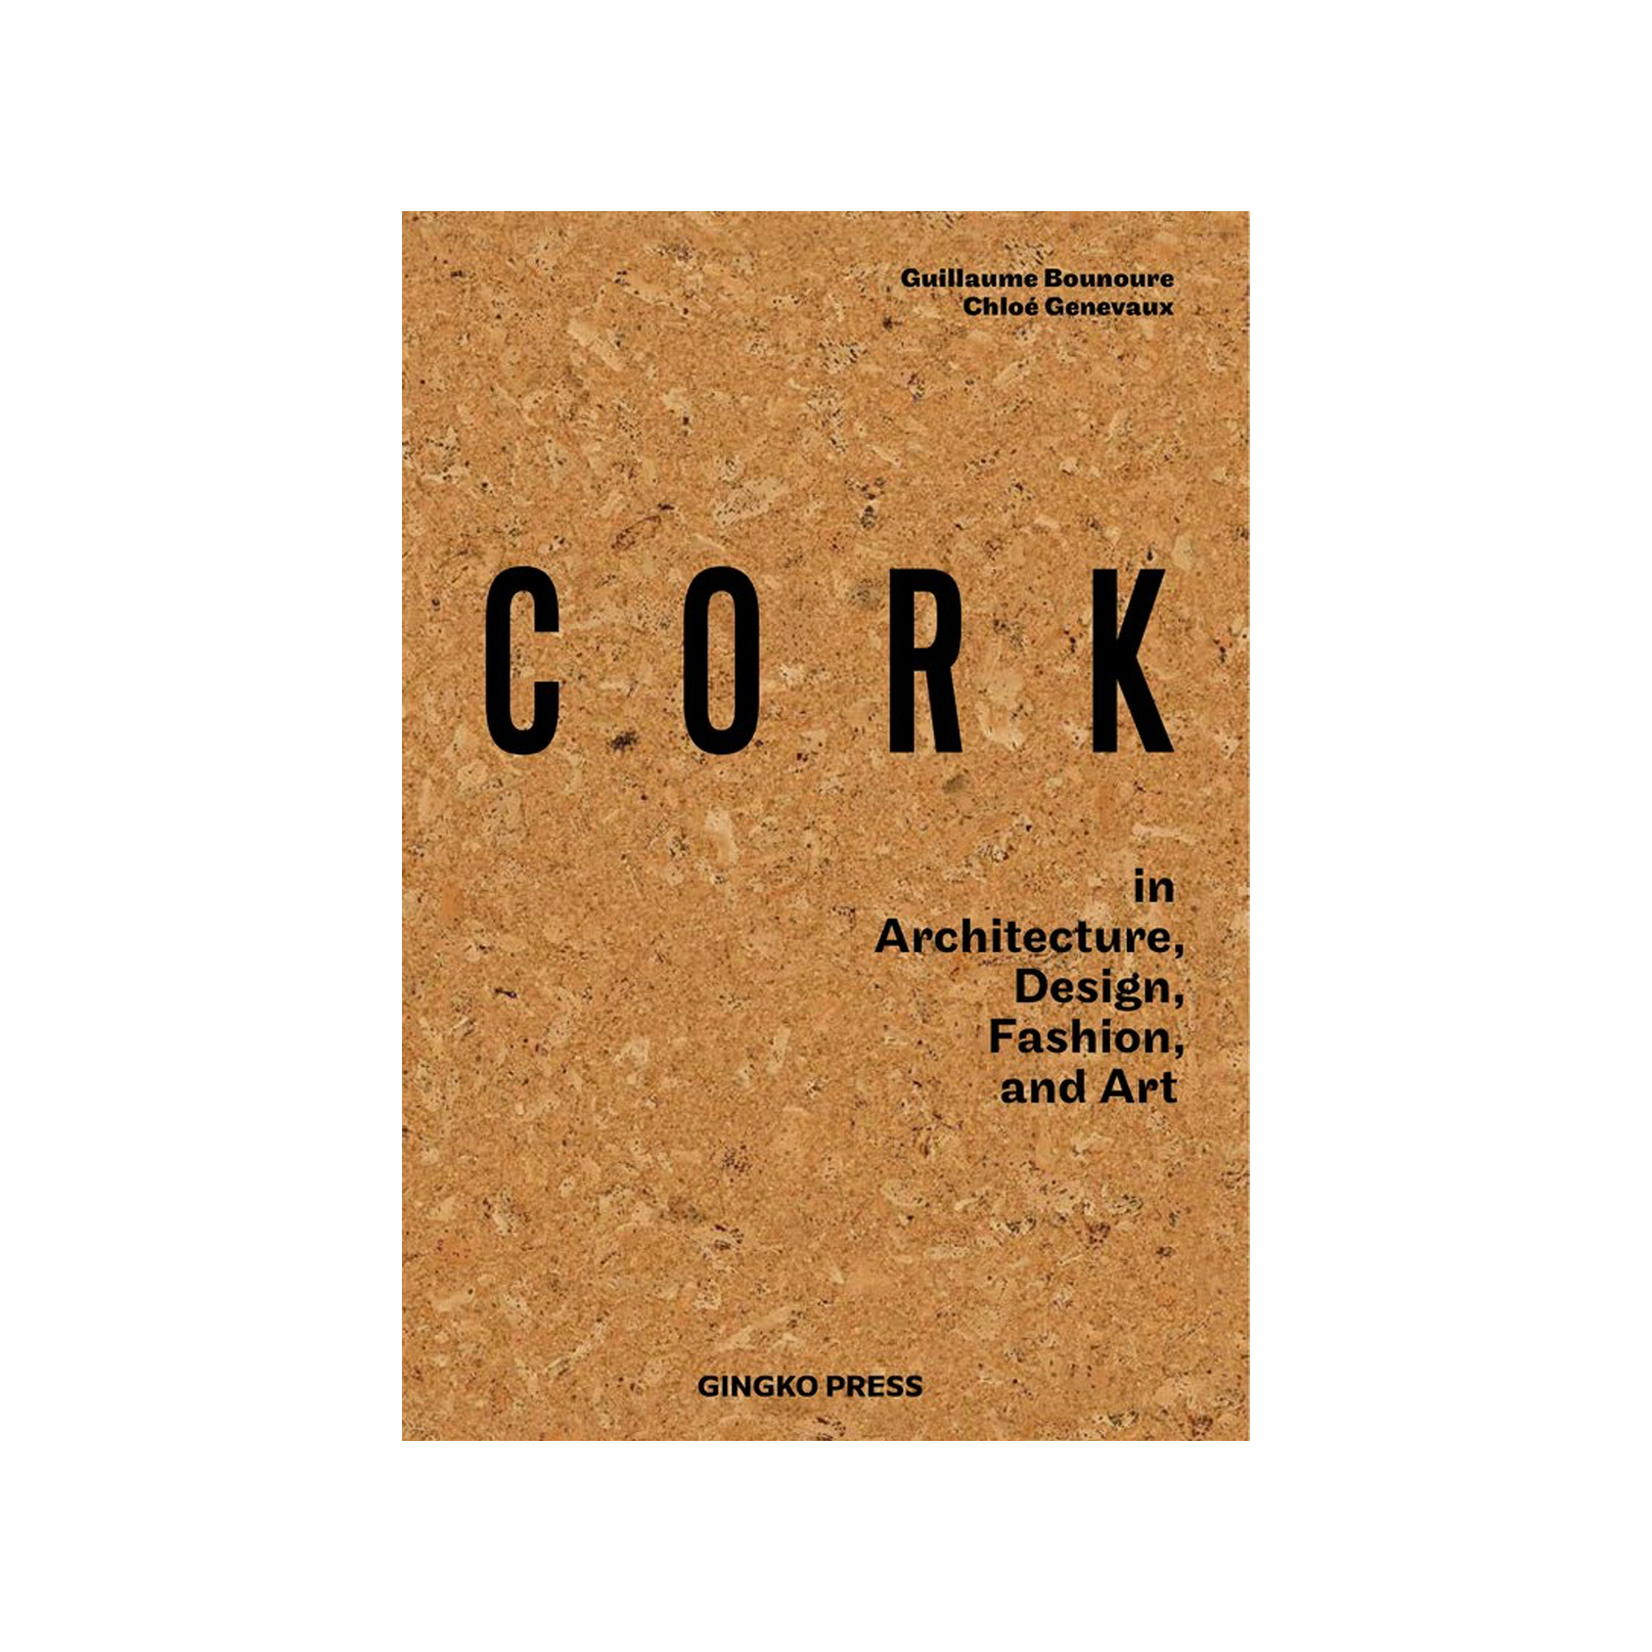 Cork in Architecture, Design, Fashion, and Art